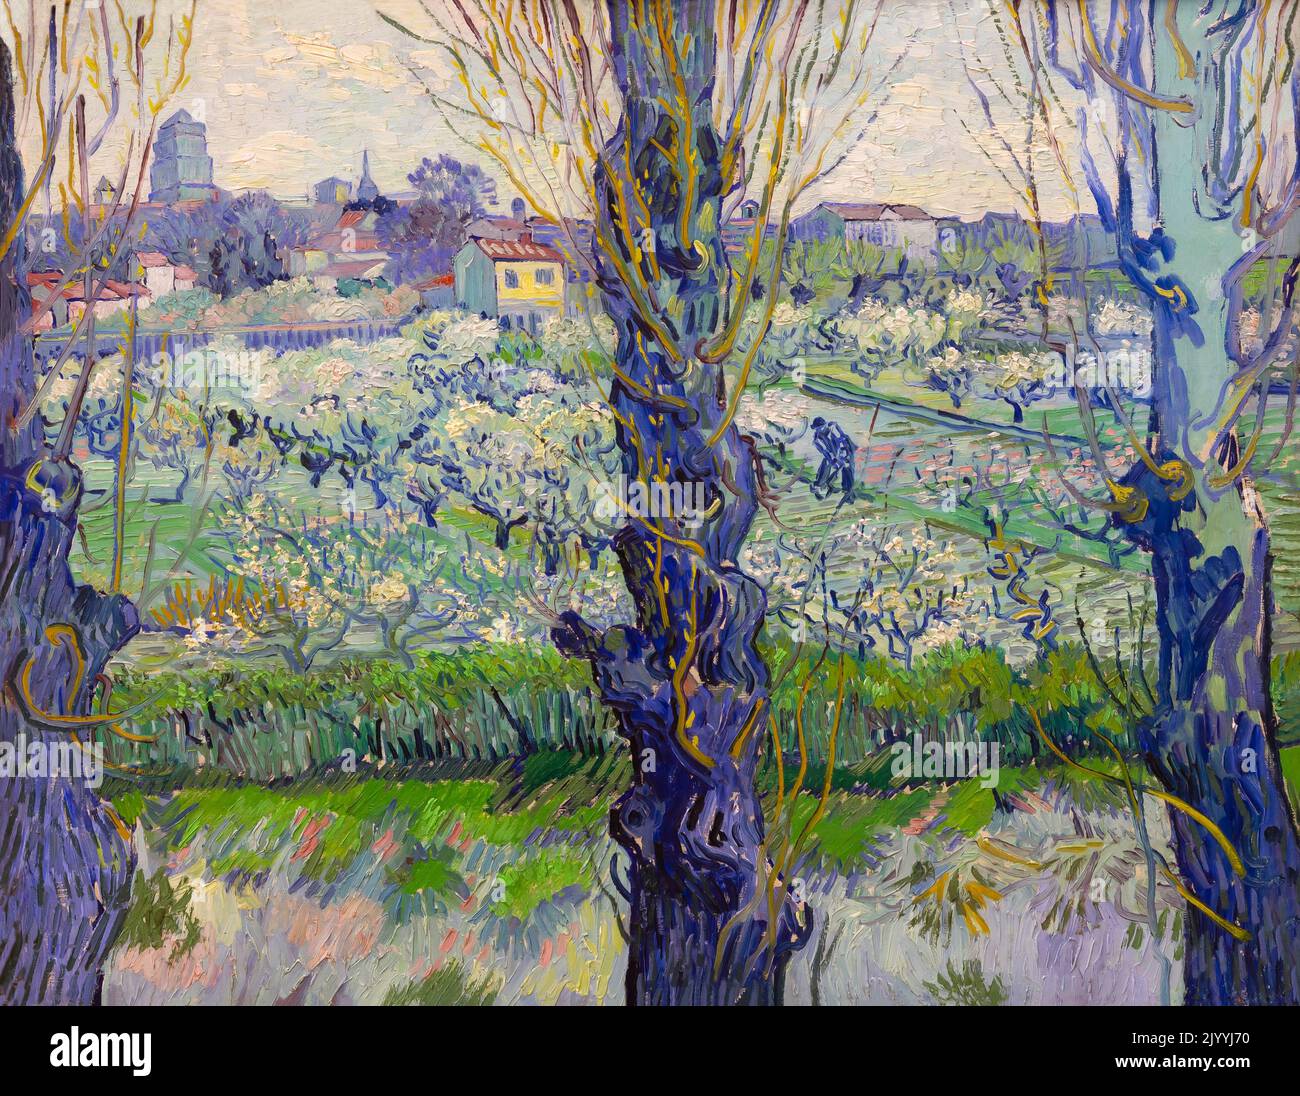 Vista de Arles, huertos de flores, Vincent van Gogh, 1889, Neue Pinakothek, Munich, Alemania, Europa Foto de stock